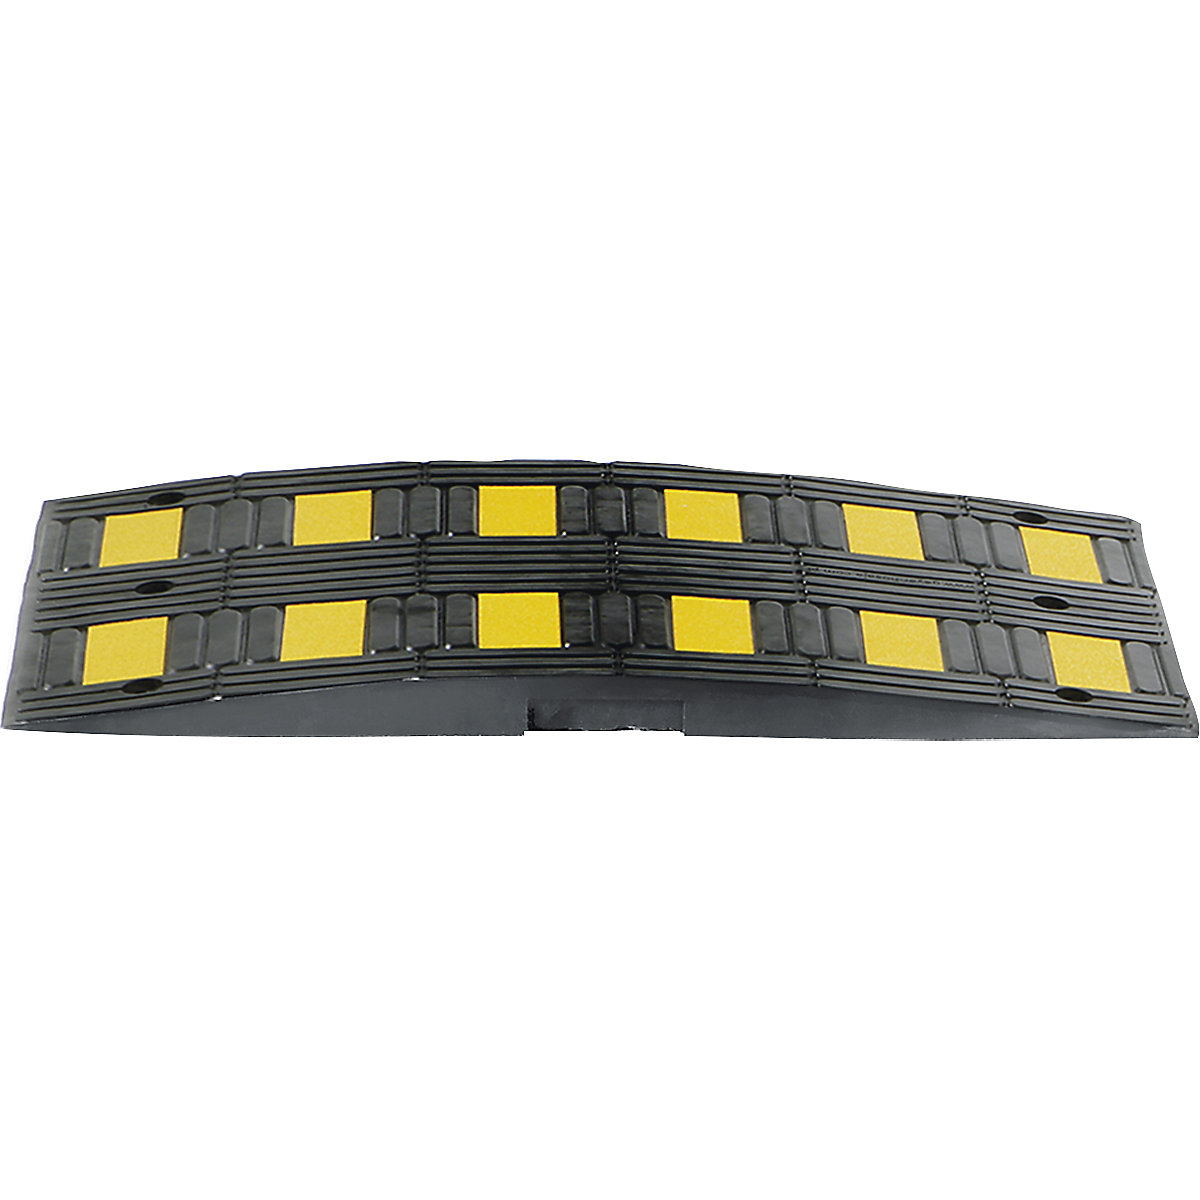 Fahrbahnschwelle aus Recyling-Gummi, gelb / schwarz, für Richtgeschwindigkeit max. 30 km/h-3